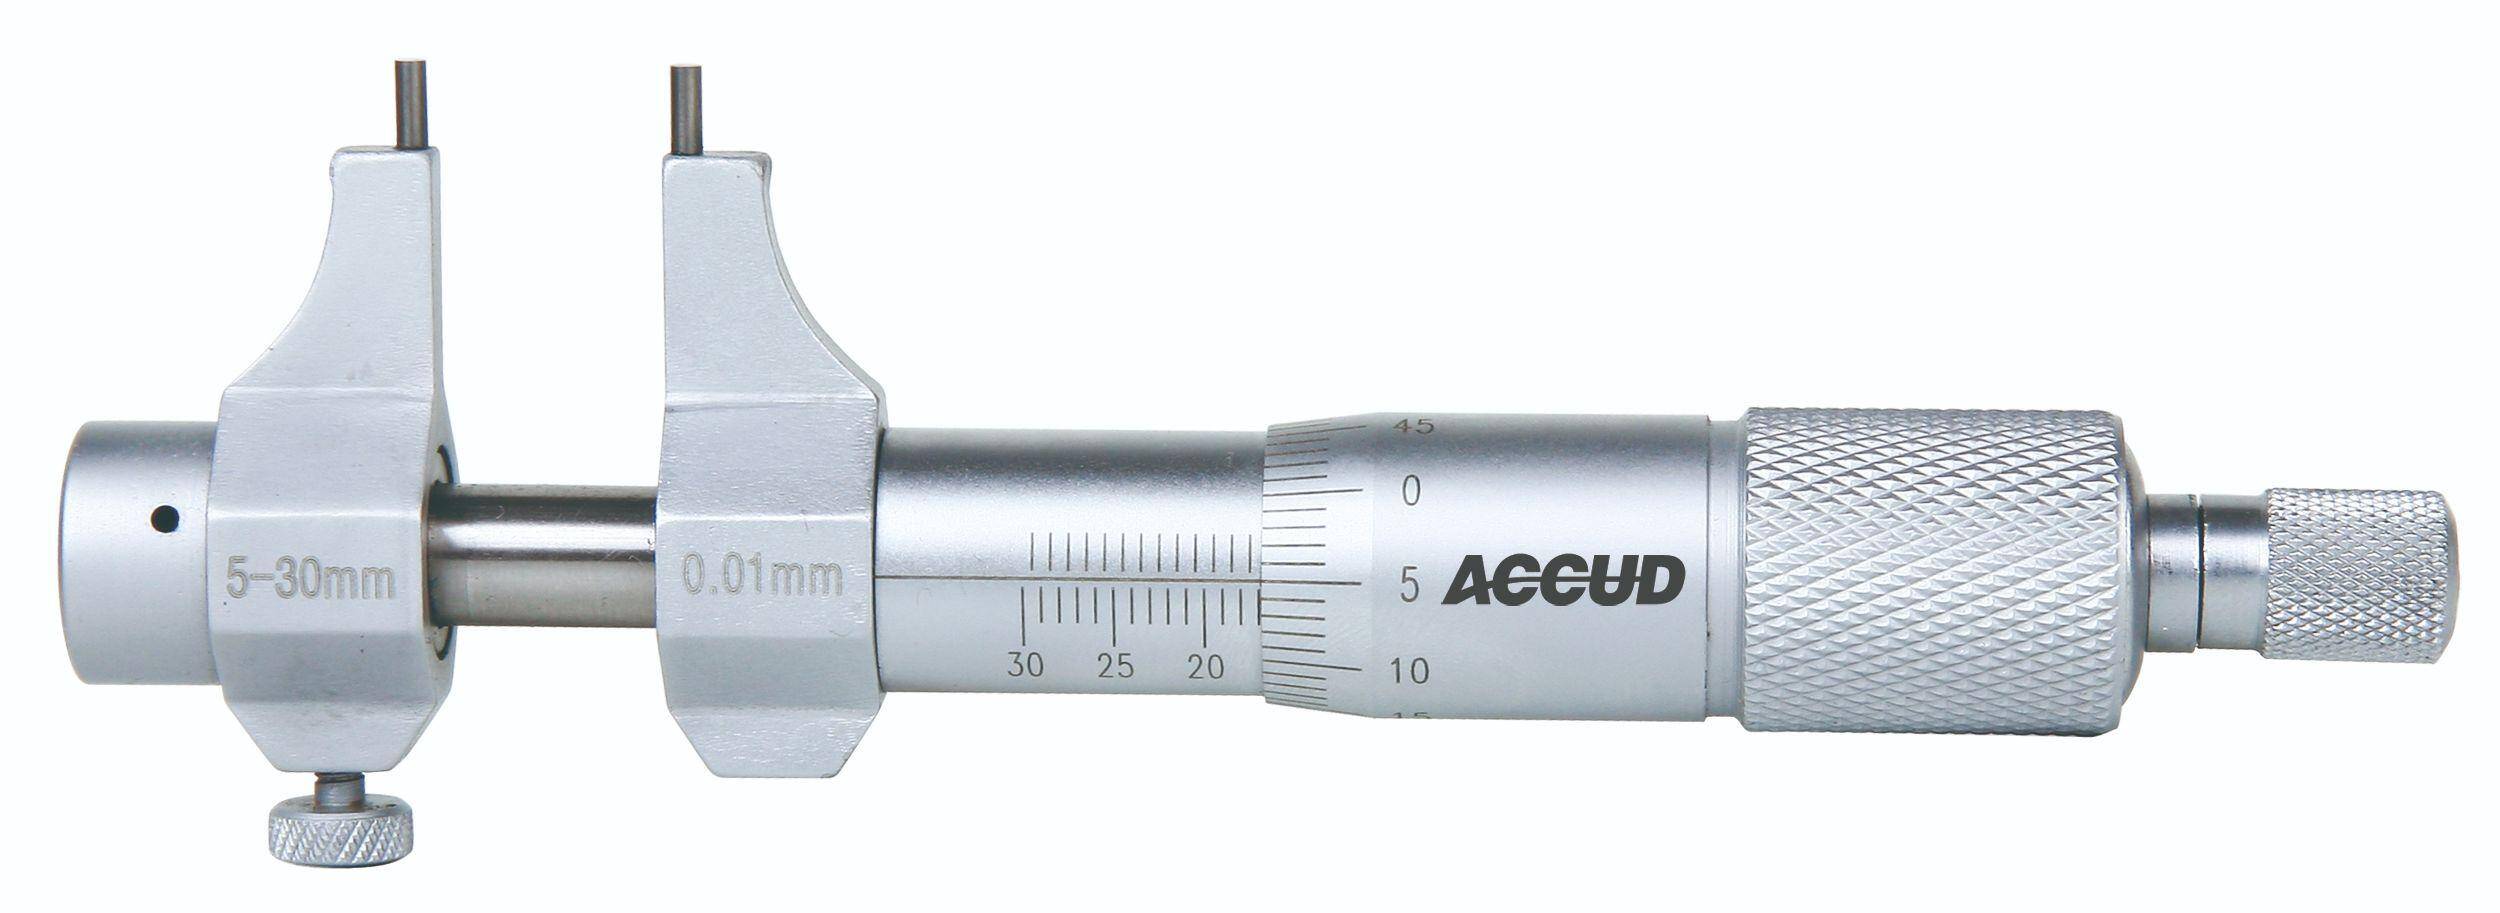 ACCUD mikrometr analogowy 5-30/0.01 mm do pomiarów wewnętrznych + świadectwo wzorcowania 351-001-01 WZORC (Zdjęcie 3)